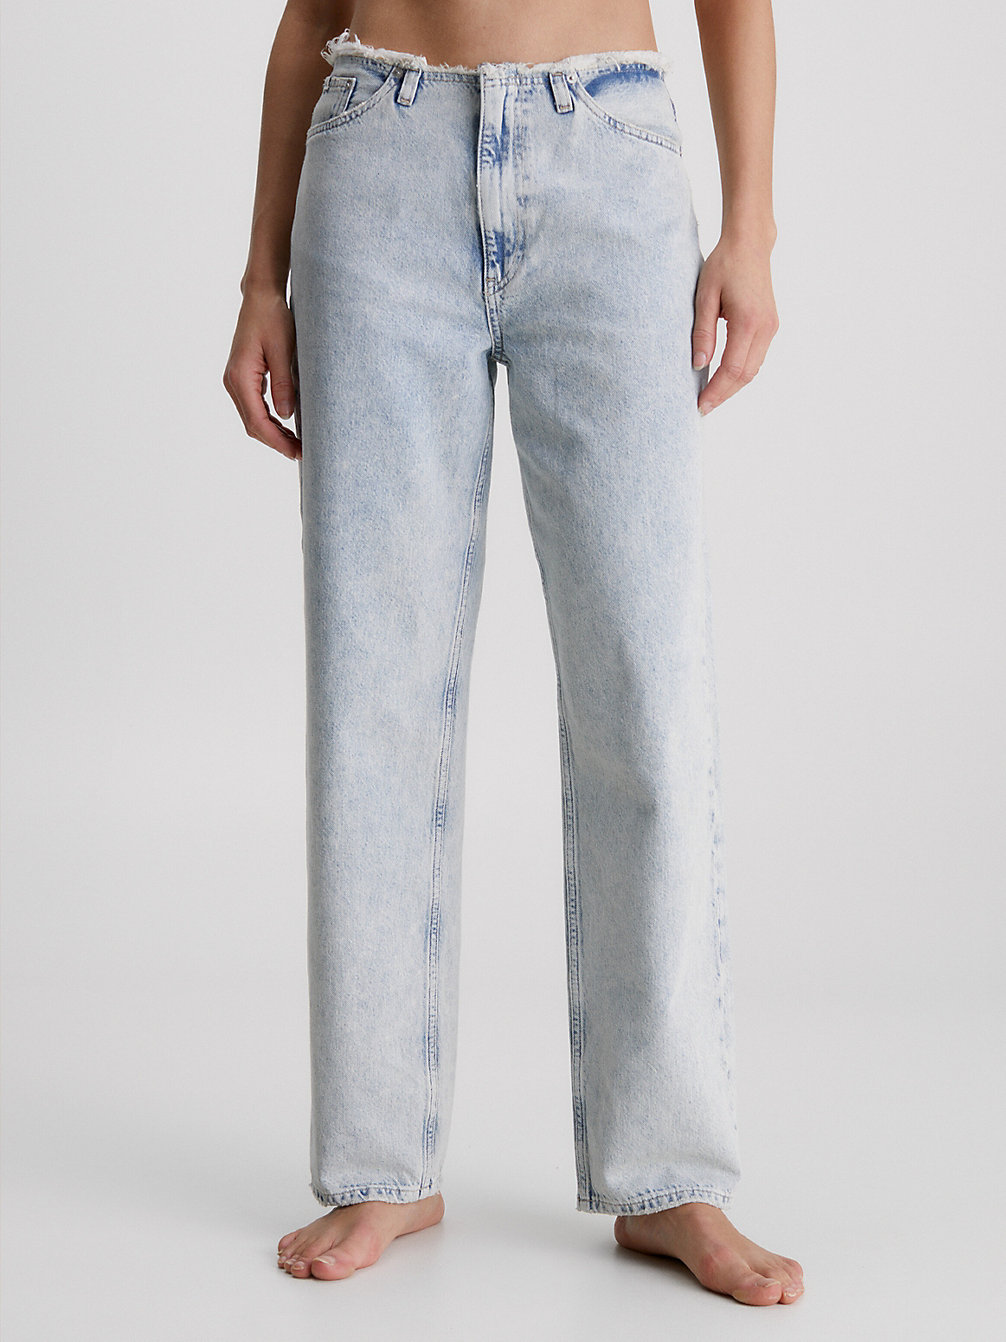 DENIM LIGHT 90's Straight Cut-Off Waist Jeans undefined women Calvin Klein